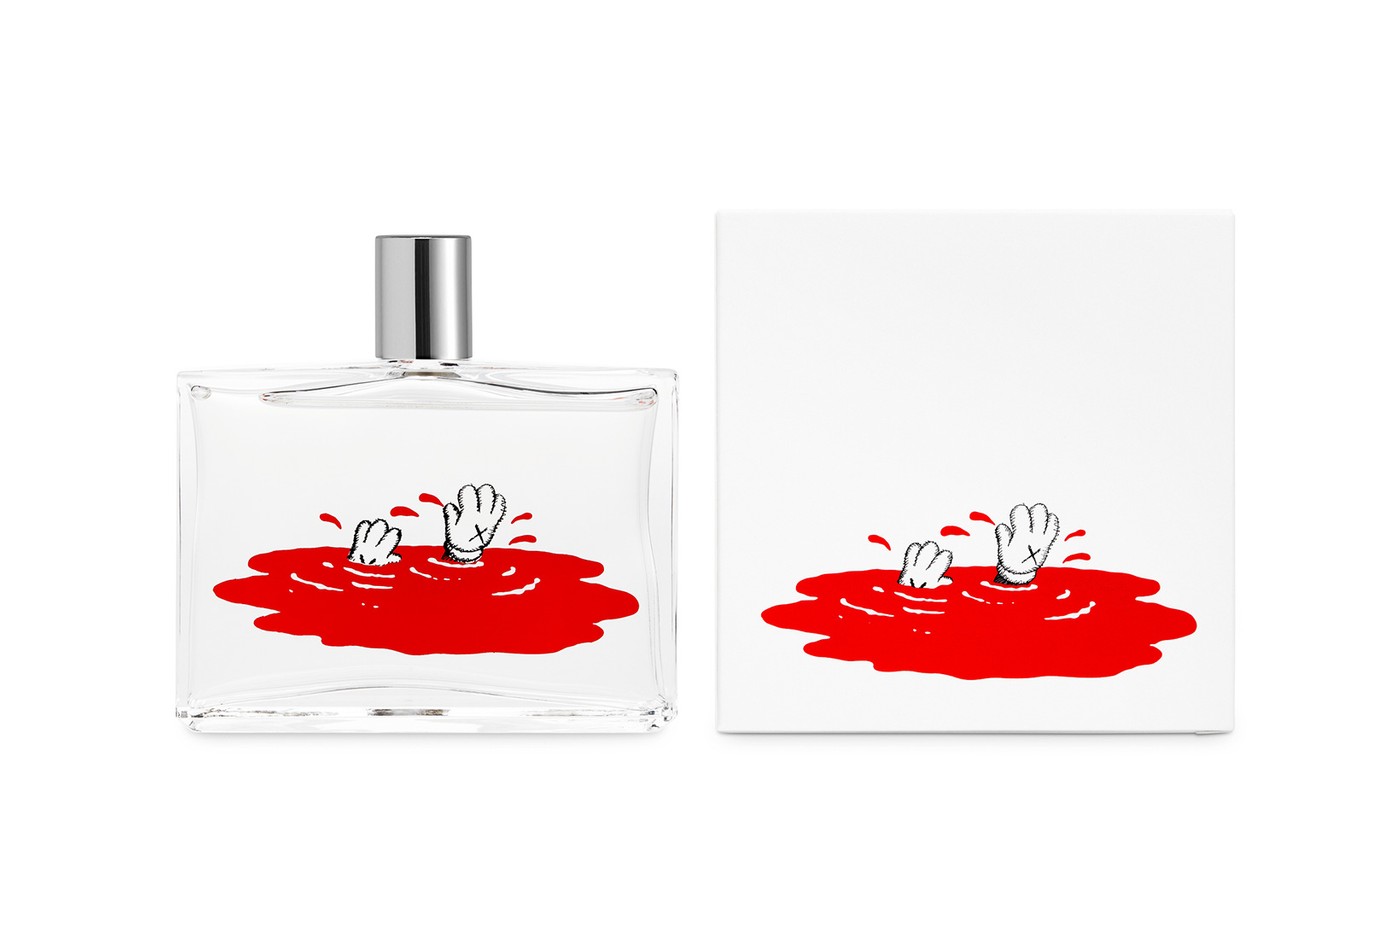 Художник KAWS создал аромат в коллаборации с Comme des Garçons (фото 1)